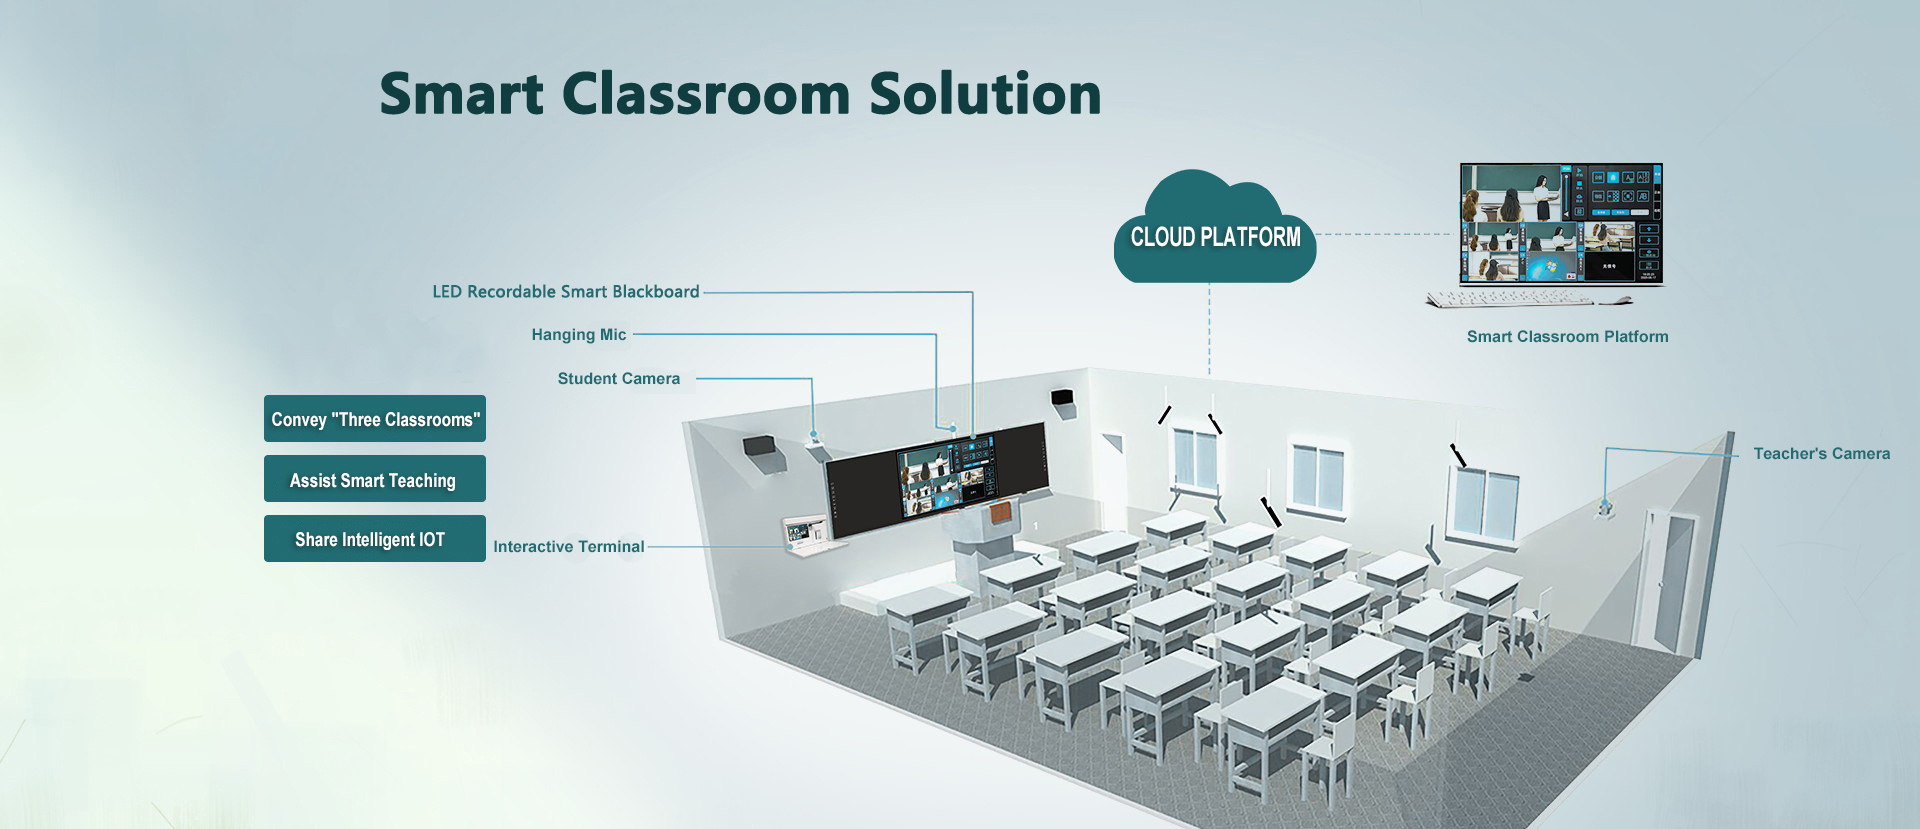 MeekBase mang tới cho thị trường những sản phẩm thiết bị giáo dục đa phương tiện hàng đầu hiện nay